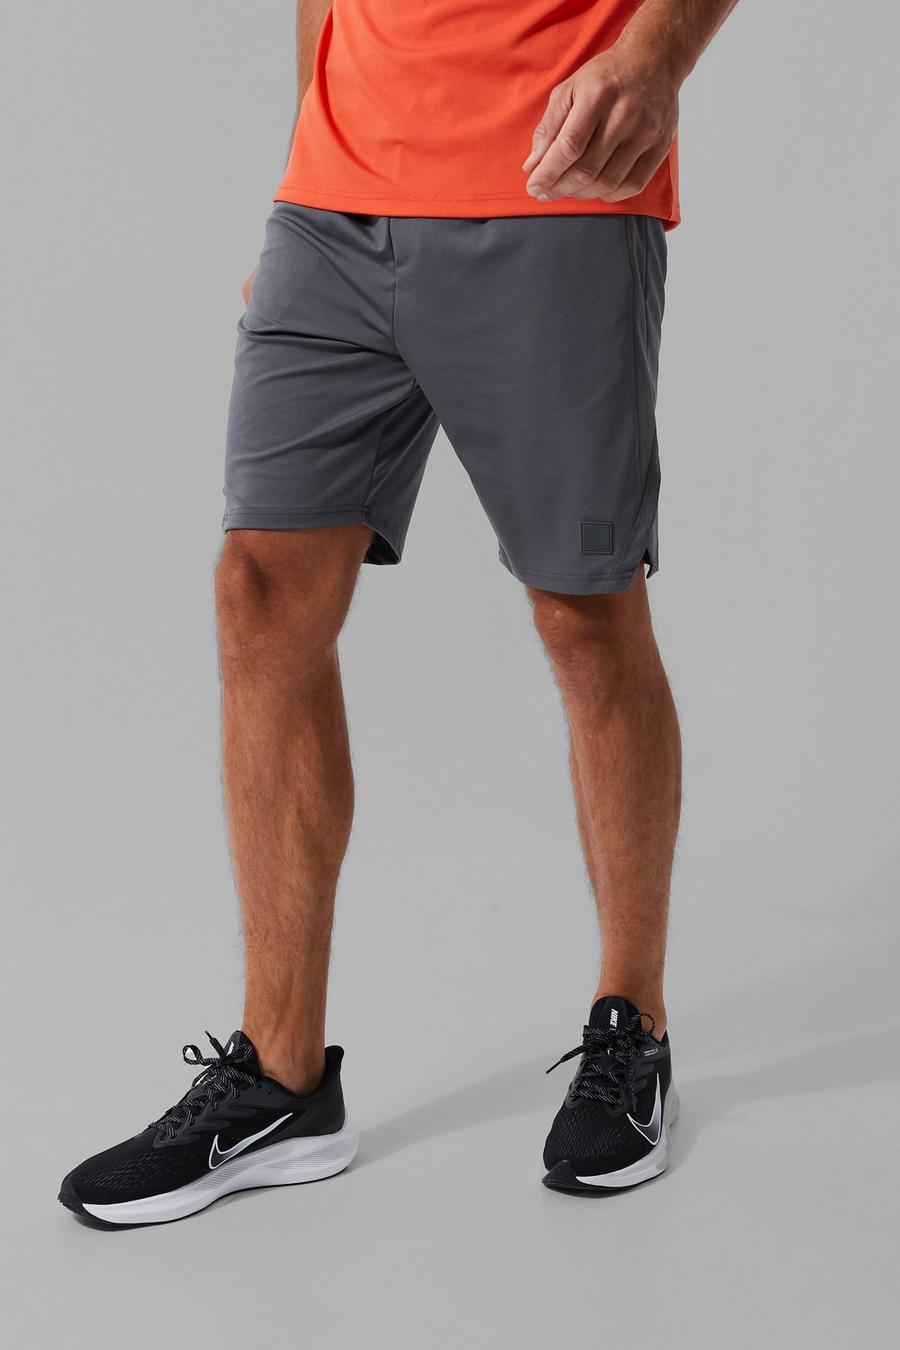 Pantalón corto Tall MAN Active resistente con abertura en el bajo, Charcoal gris